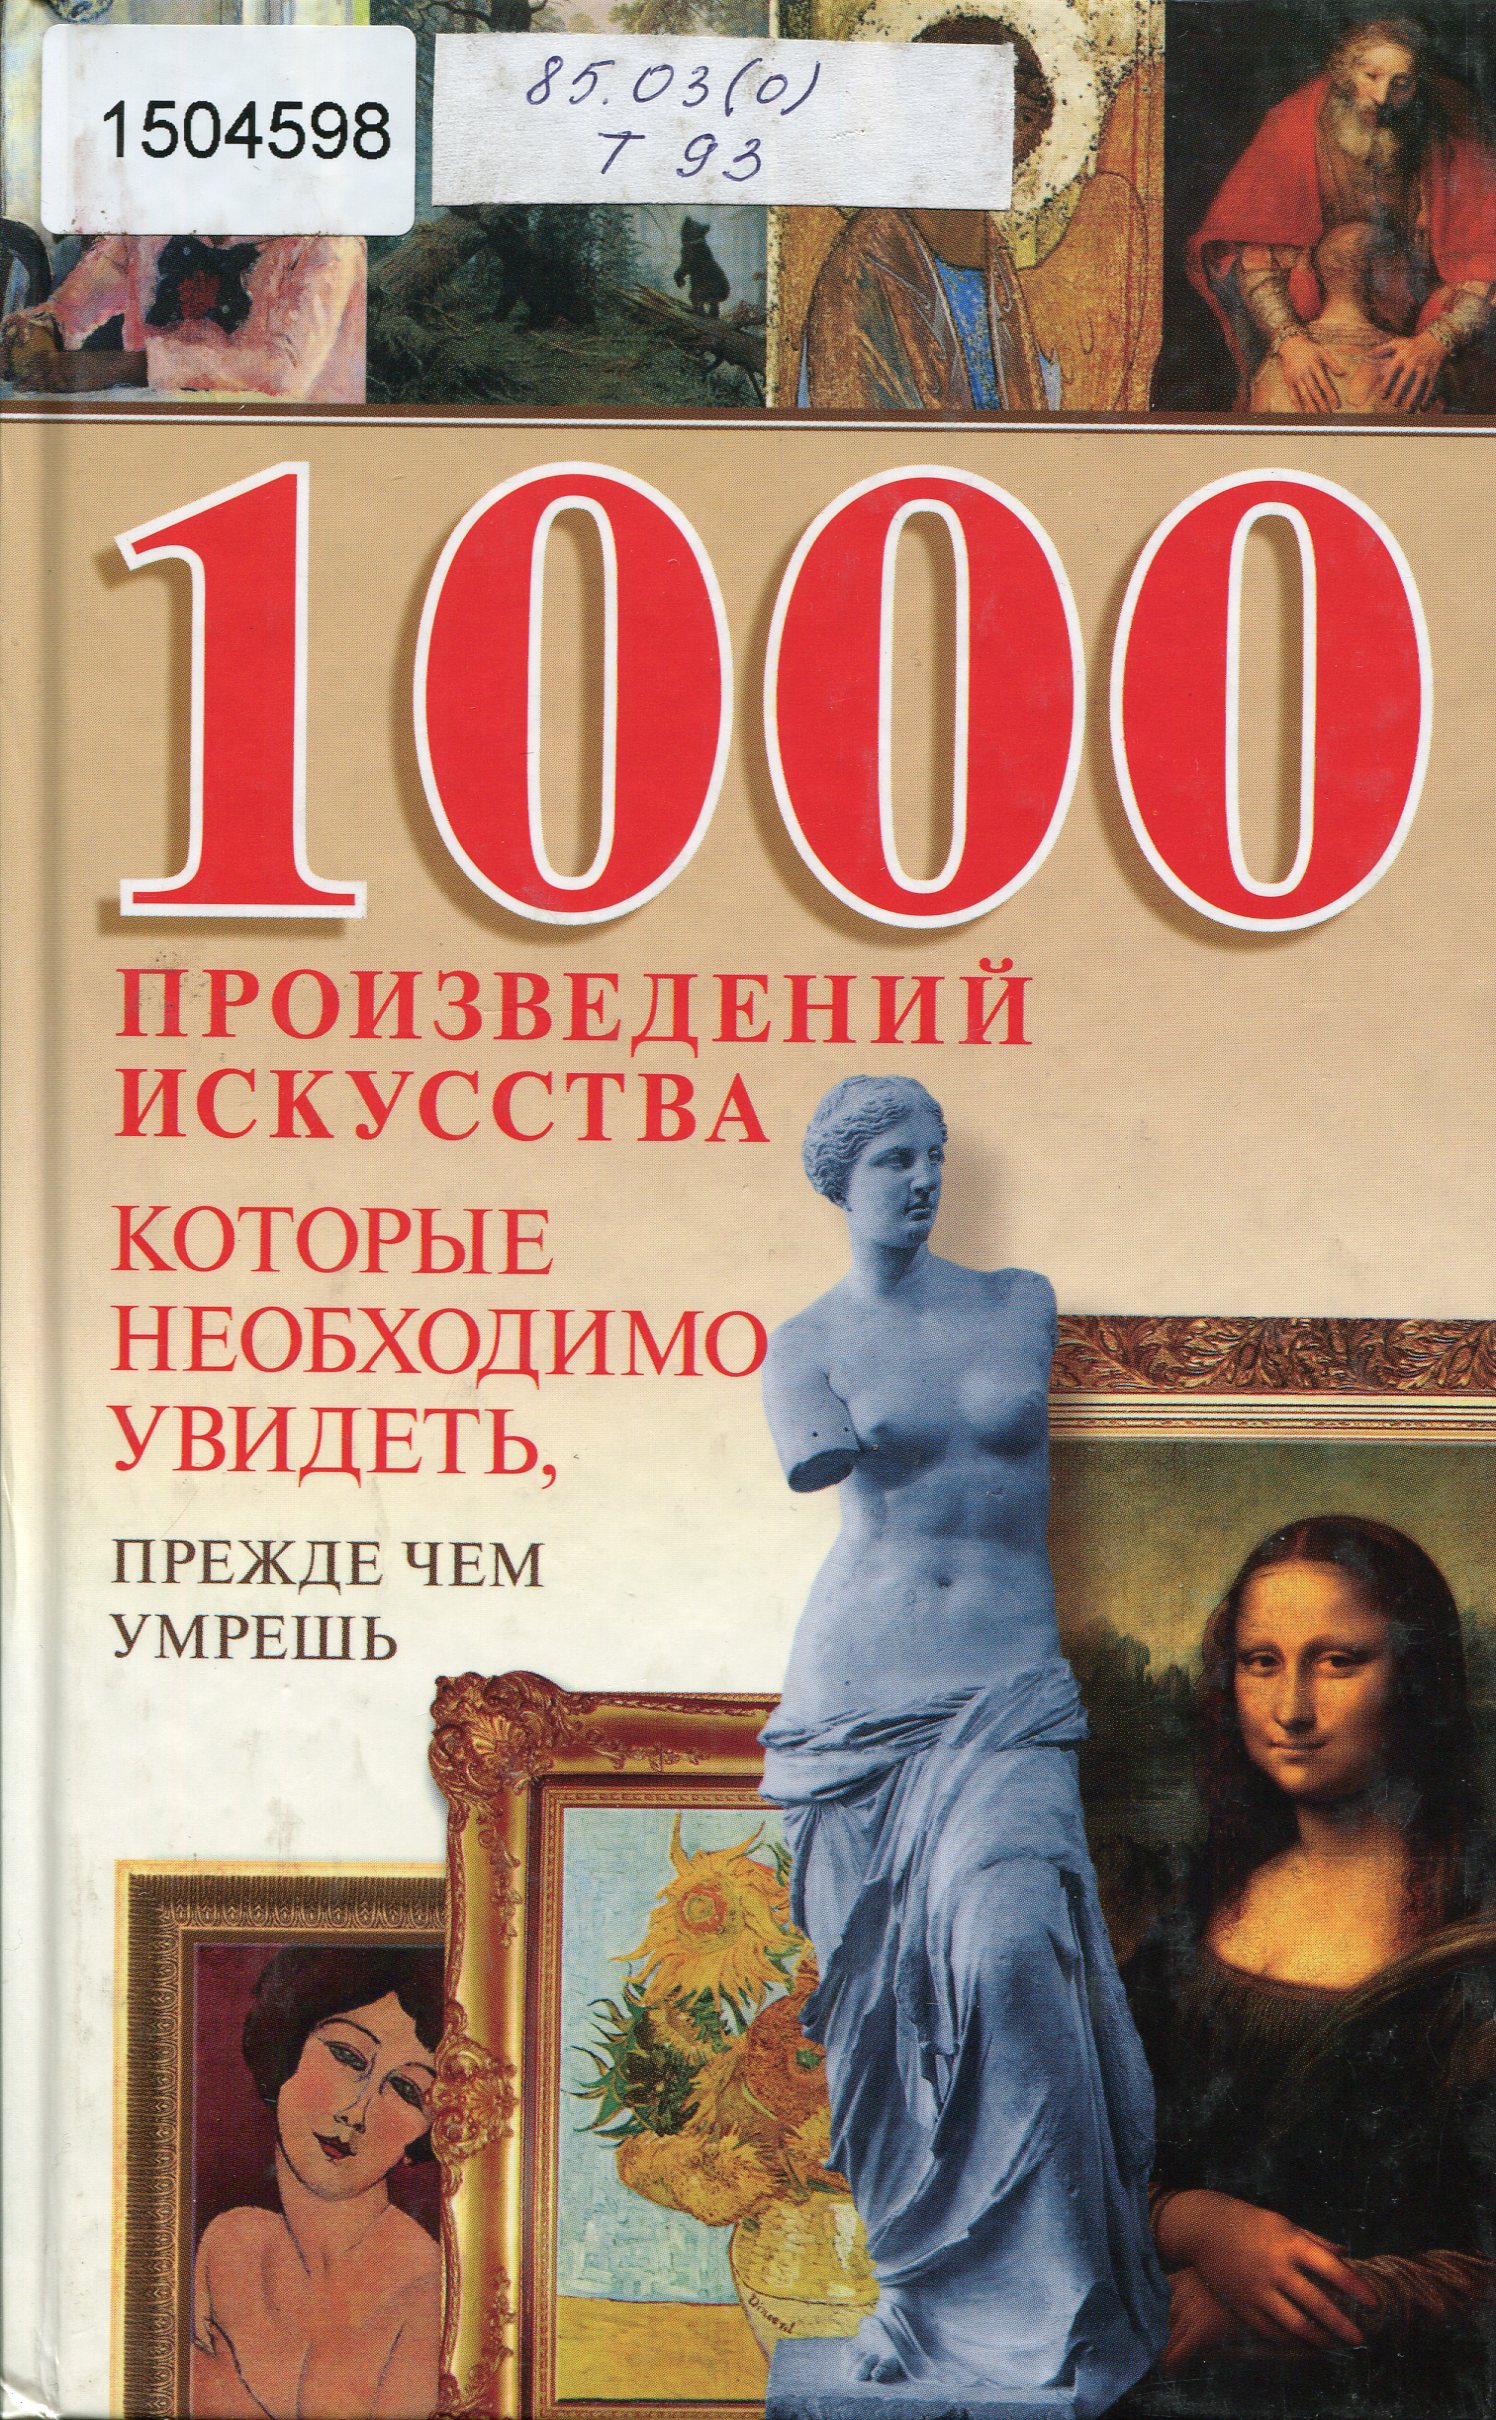 Книга произведение искусства. 1000 Книг. Книга 1000 Мировых искусств. Список 1000 книг.